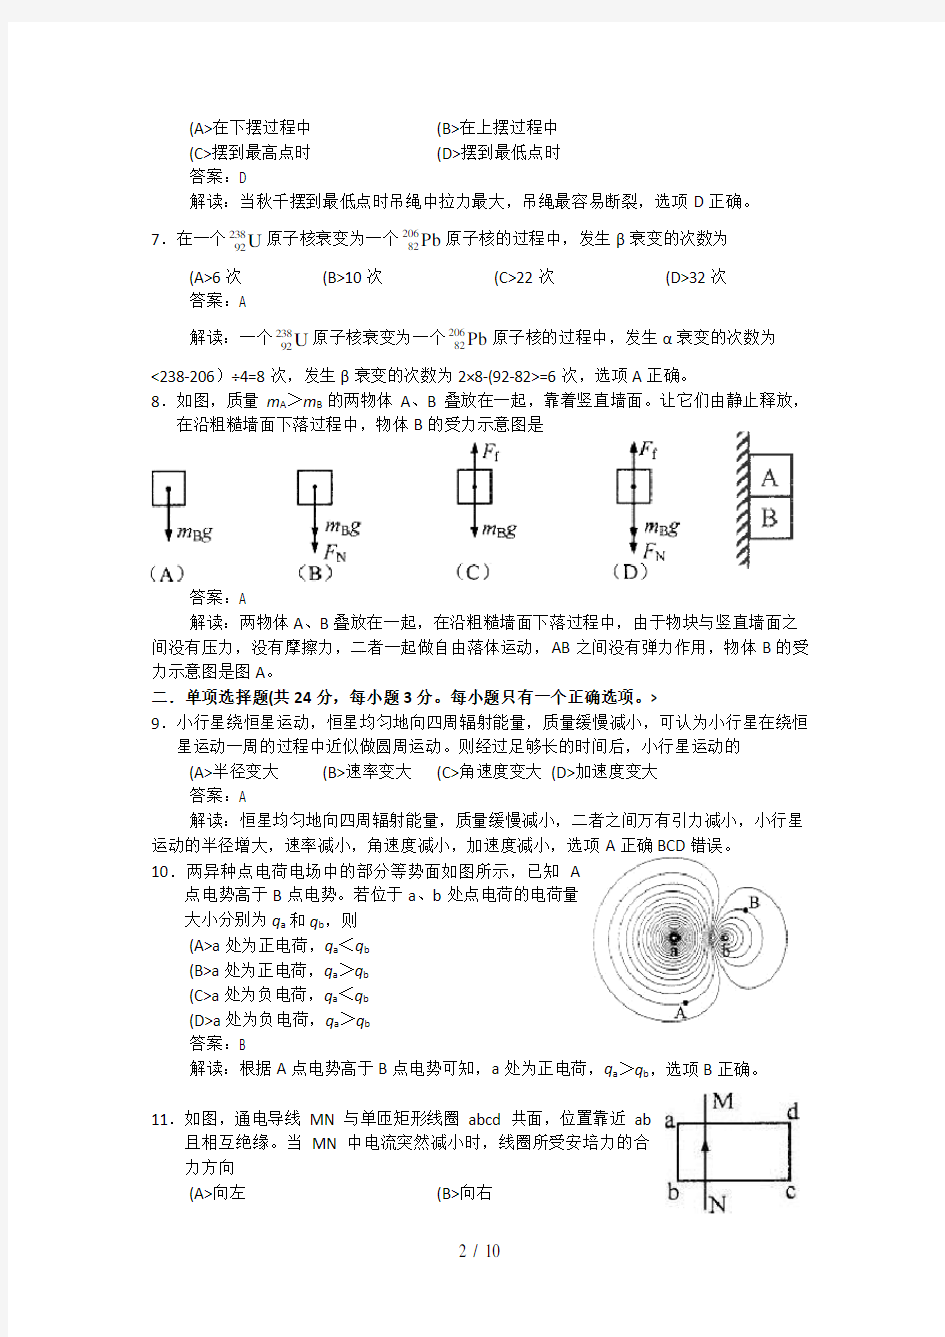 2018年上海高考物理试题以及答案详细解析版